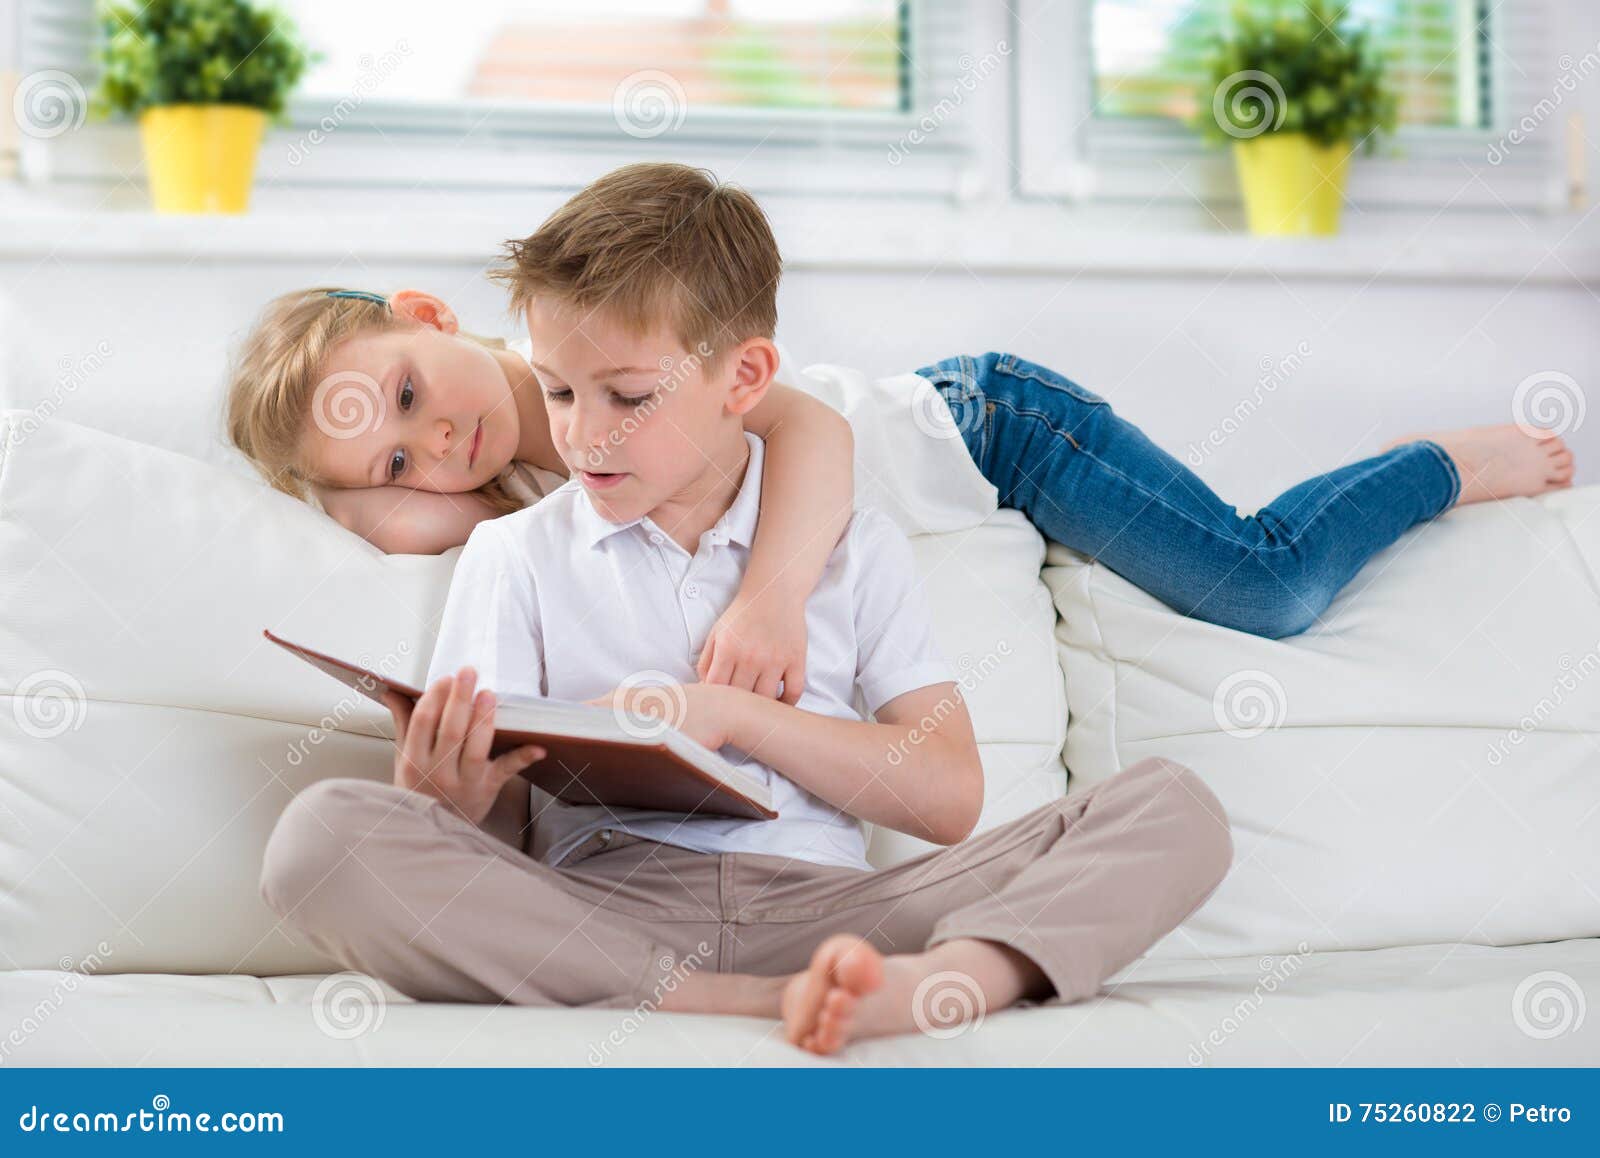 My sister to read books. Чтение книг брата с сестрой. Мальчик читает книжку маленькому братишке. Брат читает книгу сестре. Картина сестра и брат с книгой.